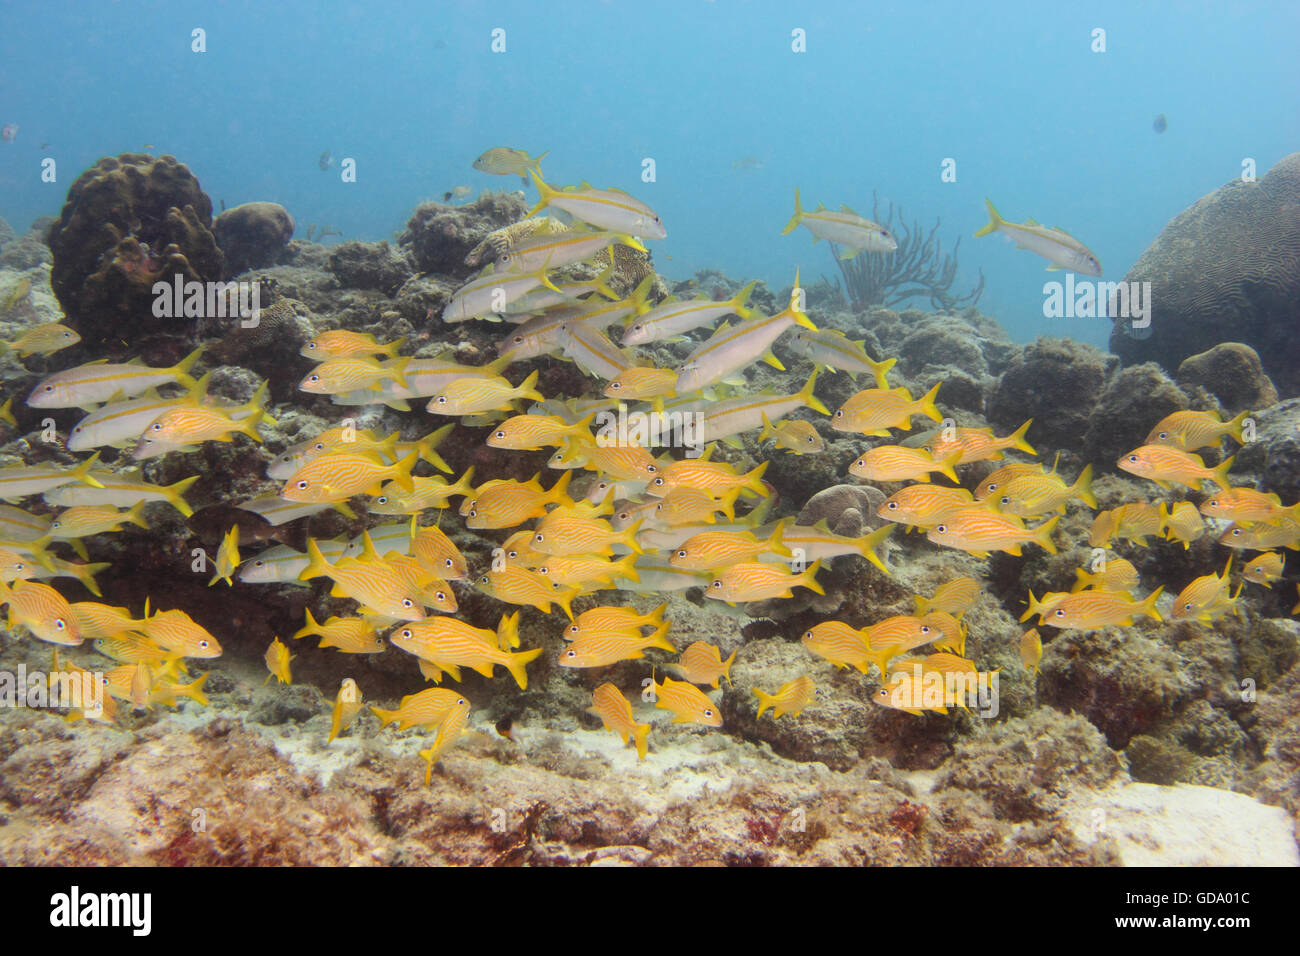 Eine Schule der Fische an einem tropischen Riff / Schiffbruch auf der karibischen Insel Aruba. Stockfoto